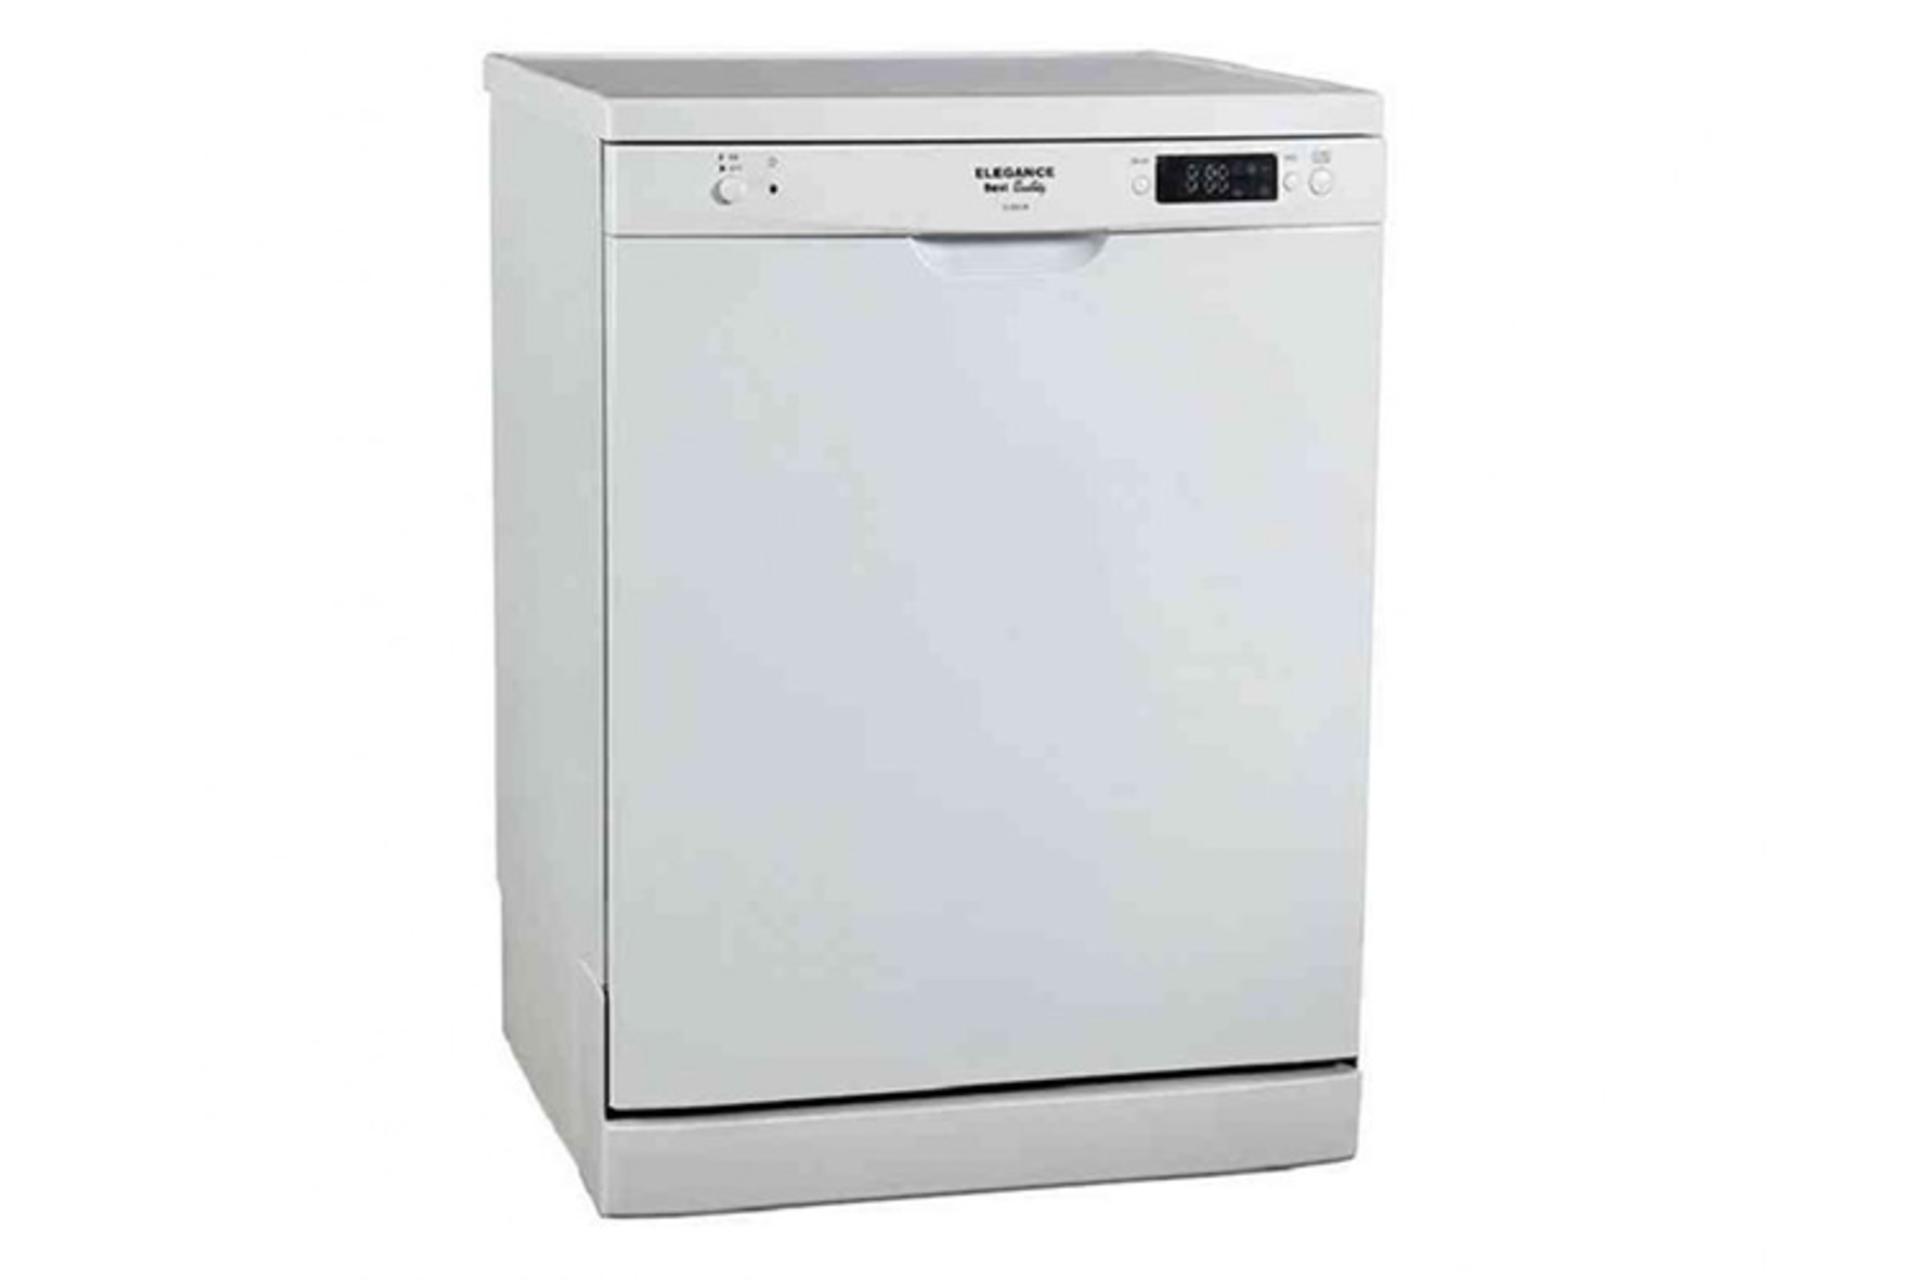 ماشین ظرفشویی الگانس Elegance EL9003 نمای جلو رنگ سفید